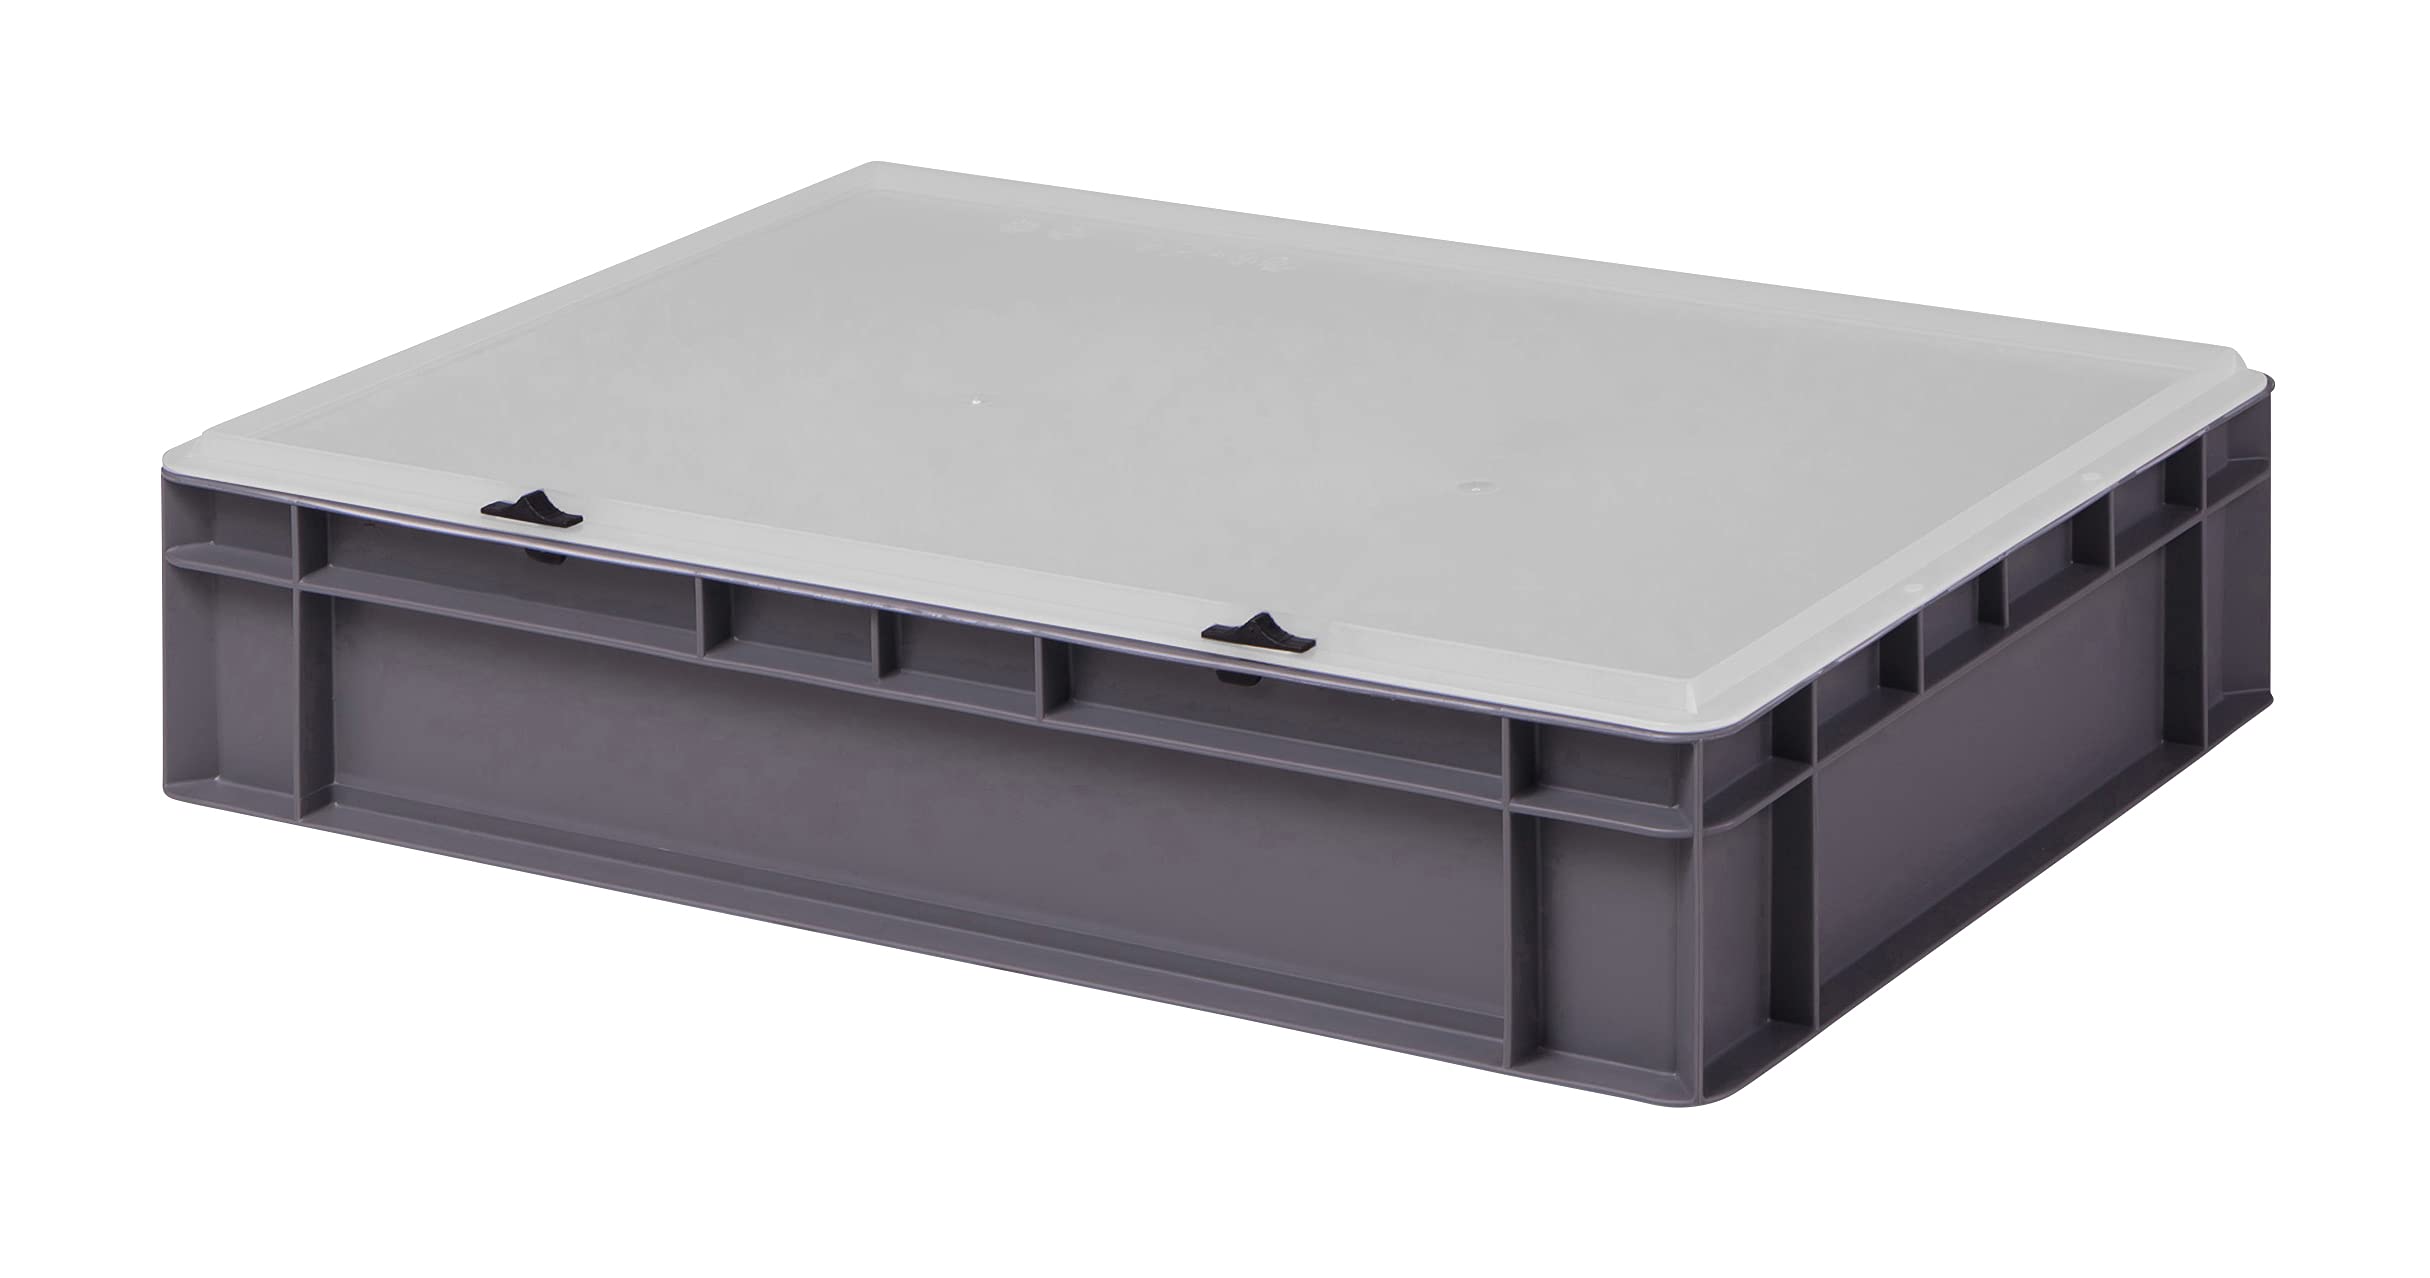 1a-TopStore Design Eurobox Stapelbox Lagerbehälter Kunststoffbox in 5 Farben und 16 Größen mit transparentem Deckel (matt) (grau, 60x40x13 cm)